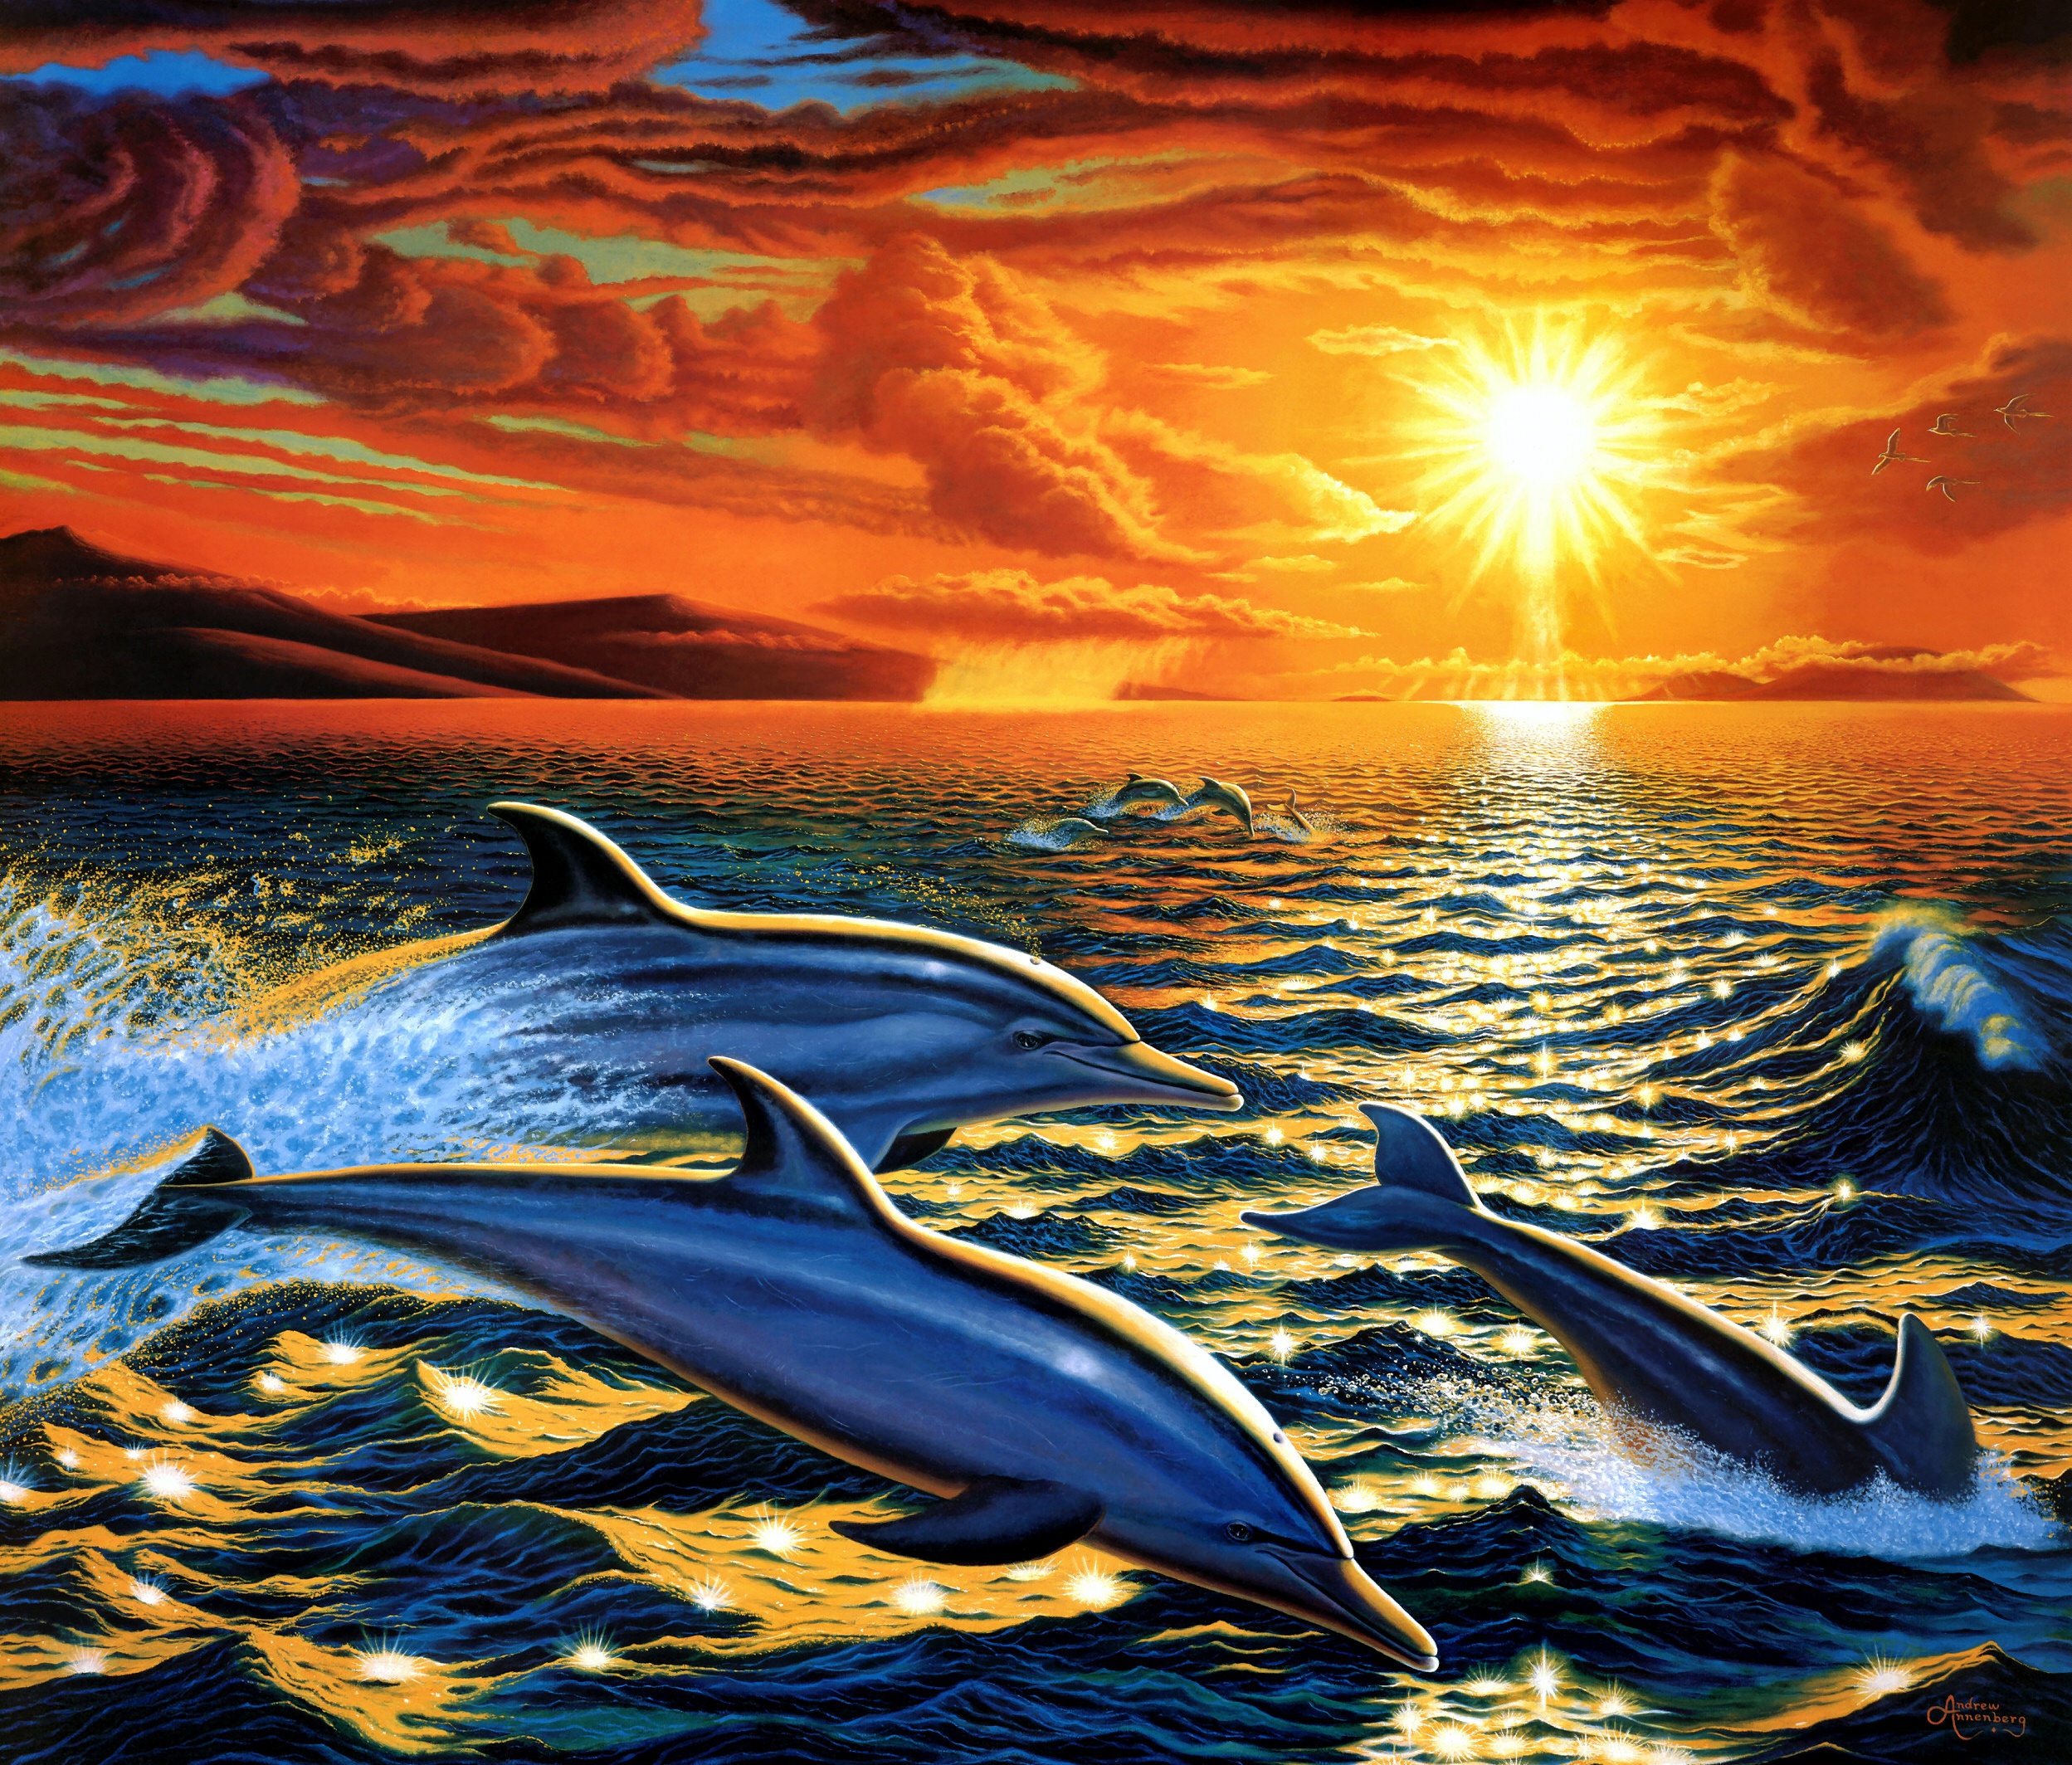 Скачать обои бесплатно Дельфин, Картина, Художественные картинка на рабочий стол ПК